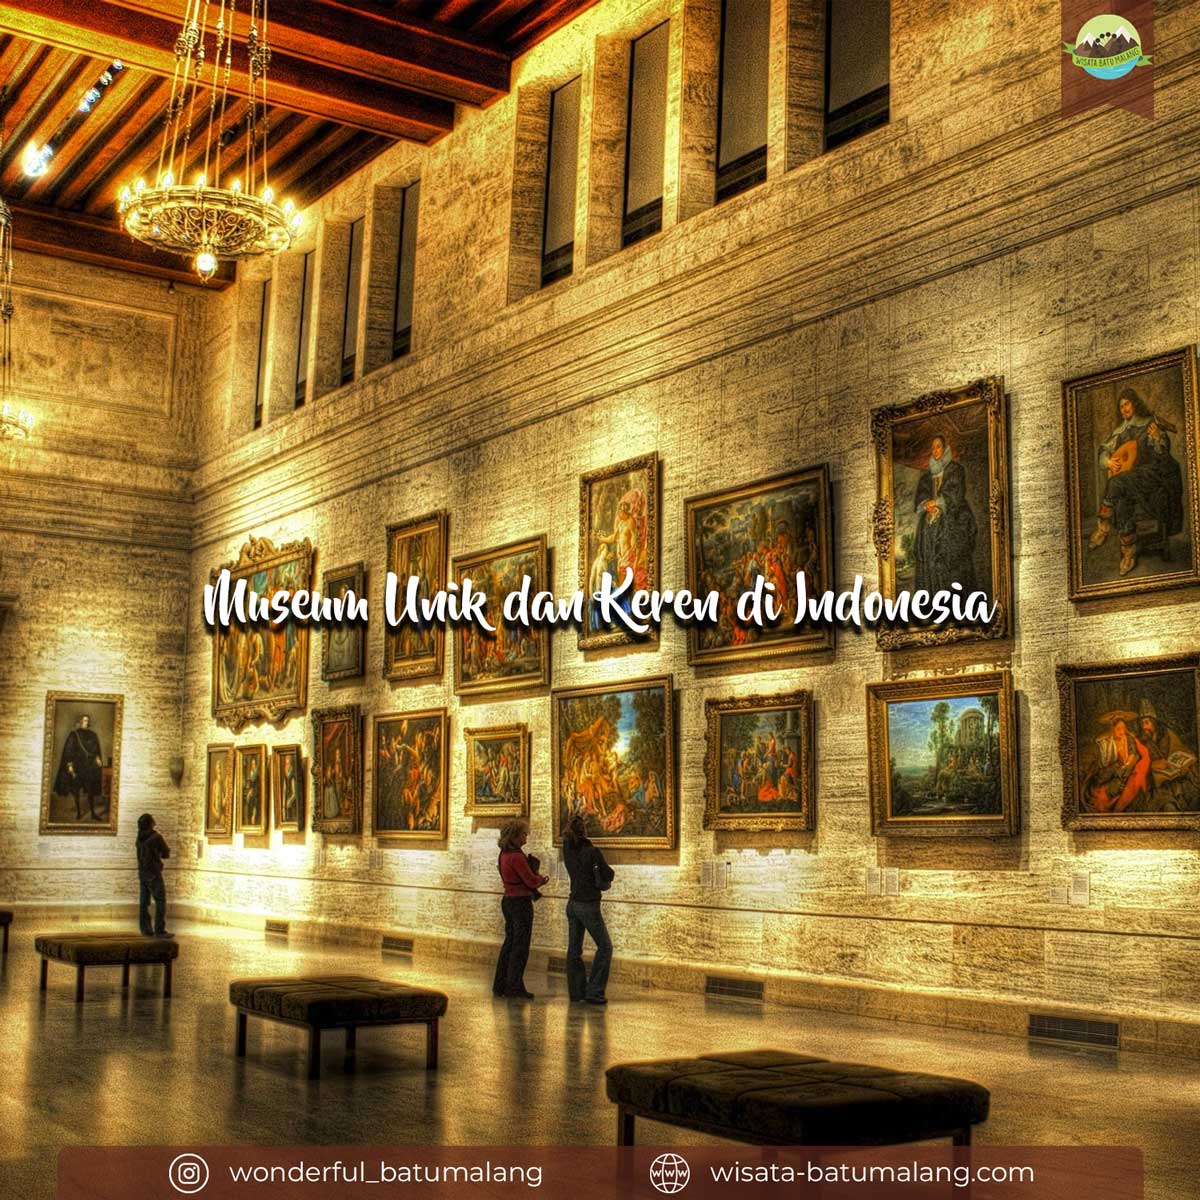 Museum unik dan keren di indonesia